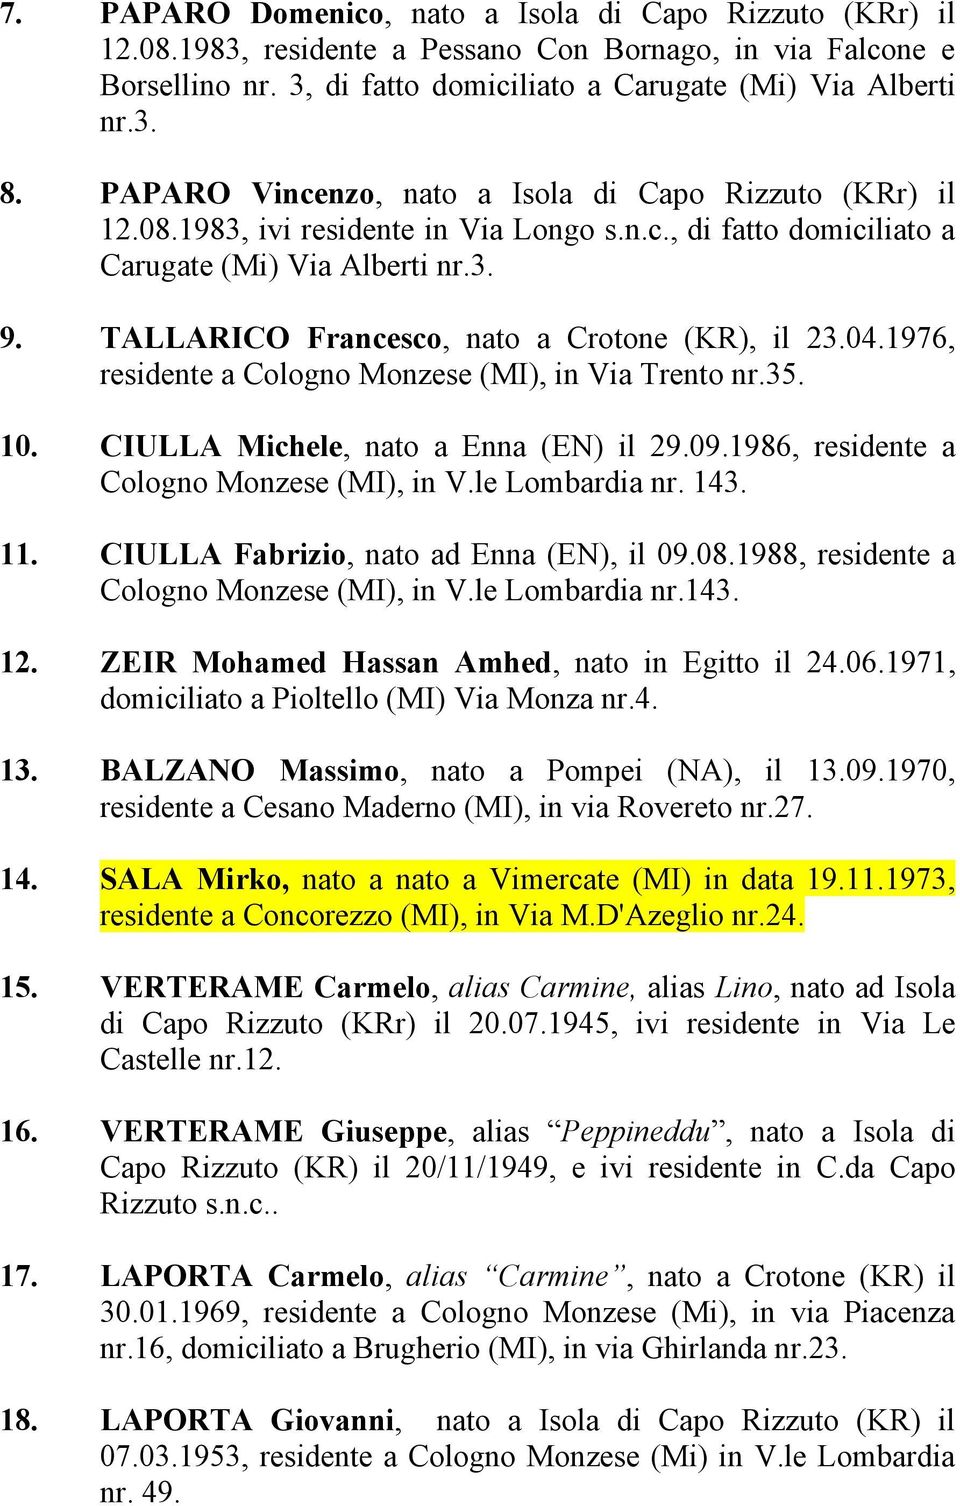 TALLARICO Francesco, nato a Crotone (KR), il 23.04.1976, residente a Cologno Monzese (MI), in Via Trento nr.35. 10. CIULLA Michele, nato a Enna (EN) il 29.09.